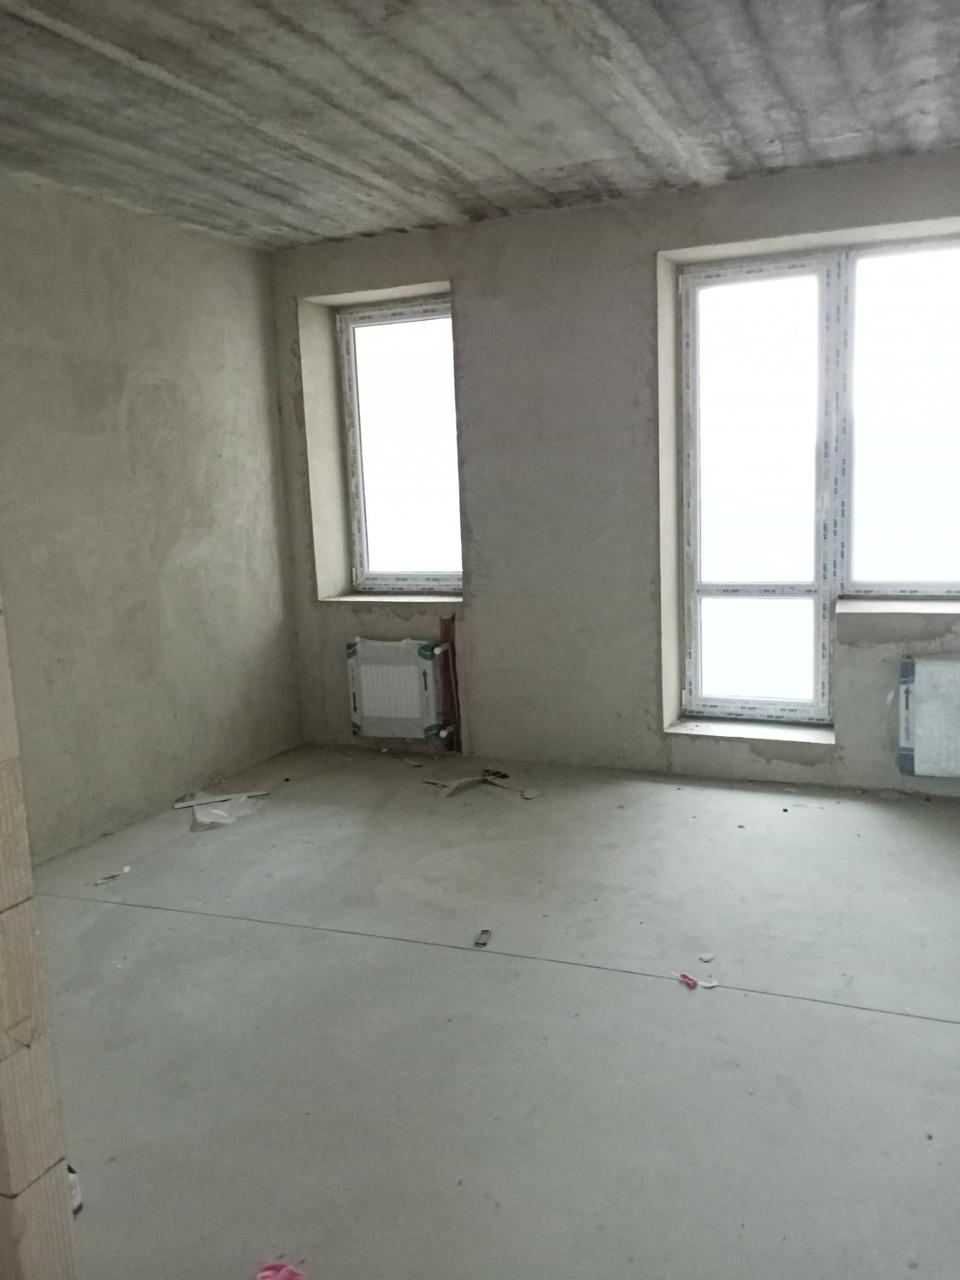 Продам 2 комнатную квартиру в ЖК Одесский двор по выгодной цене